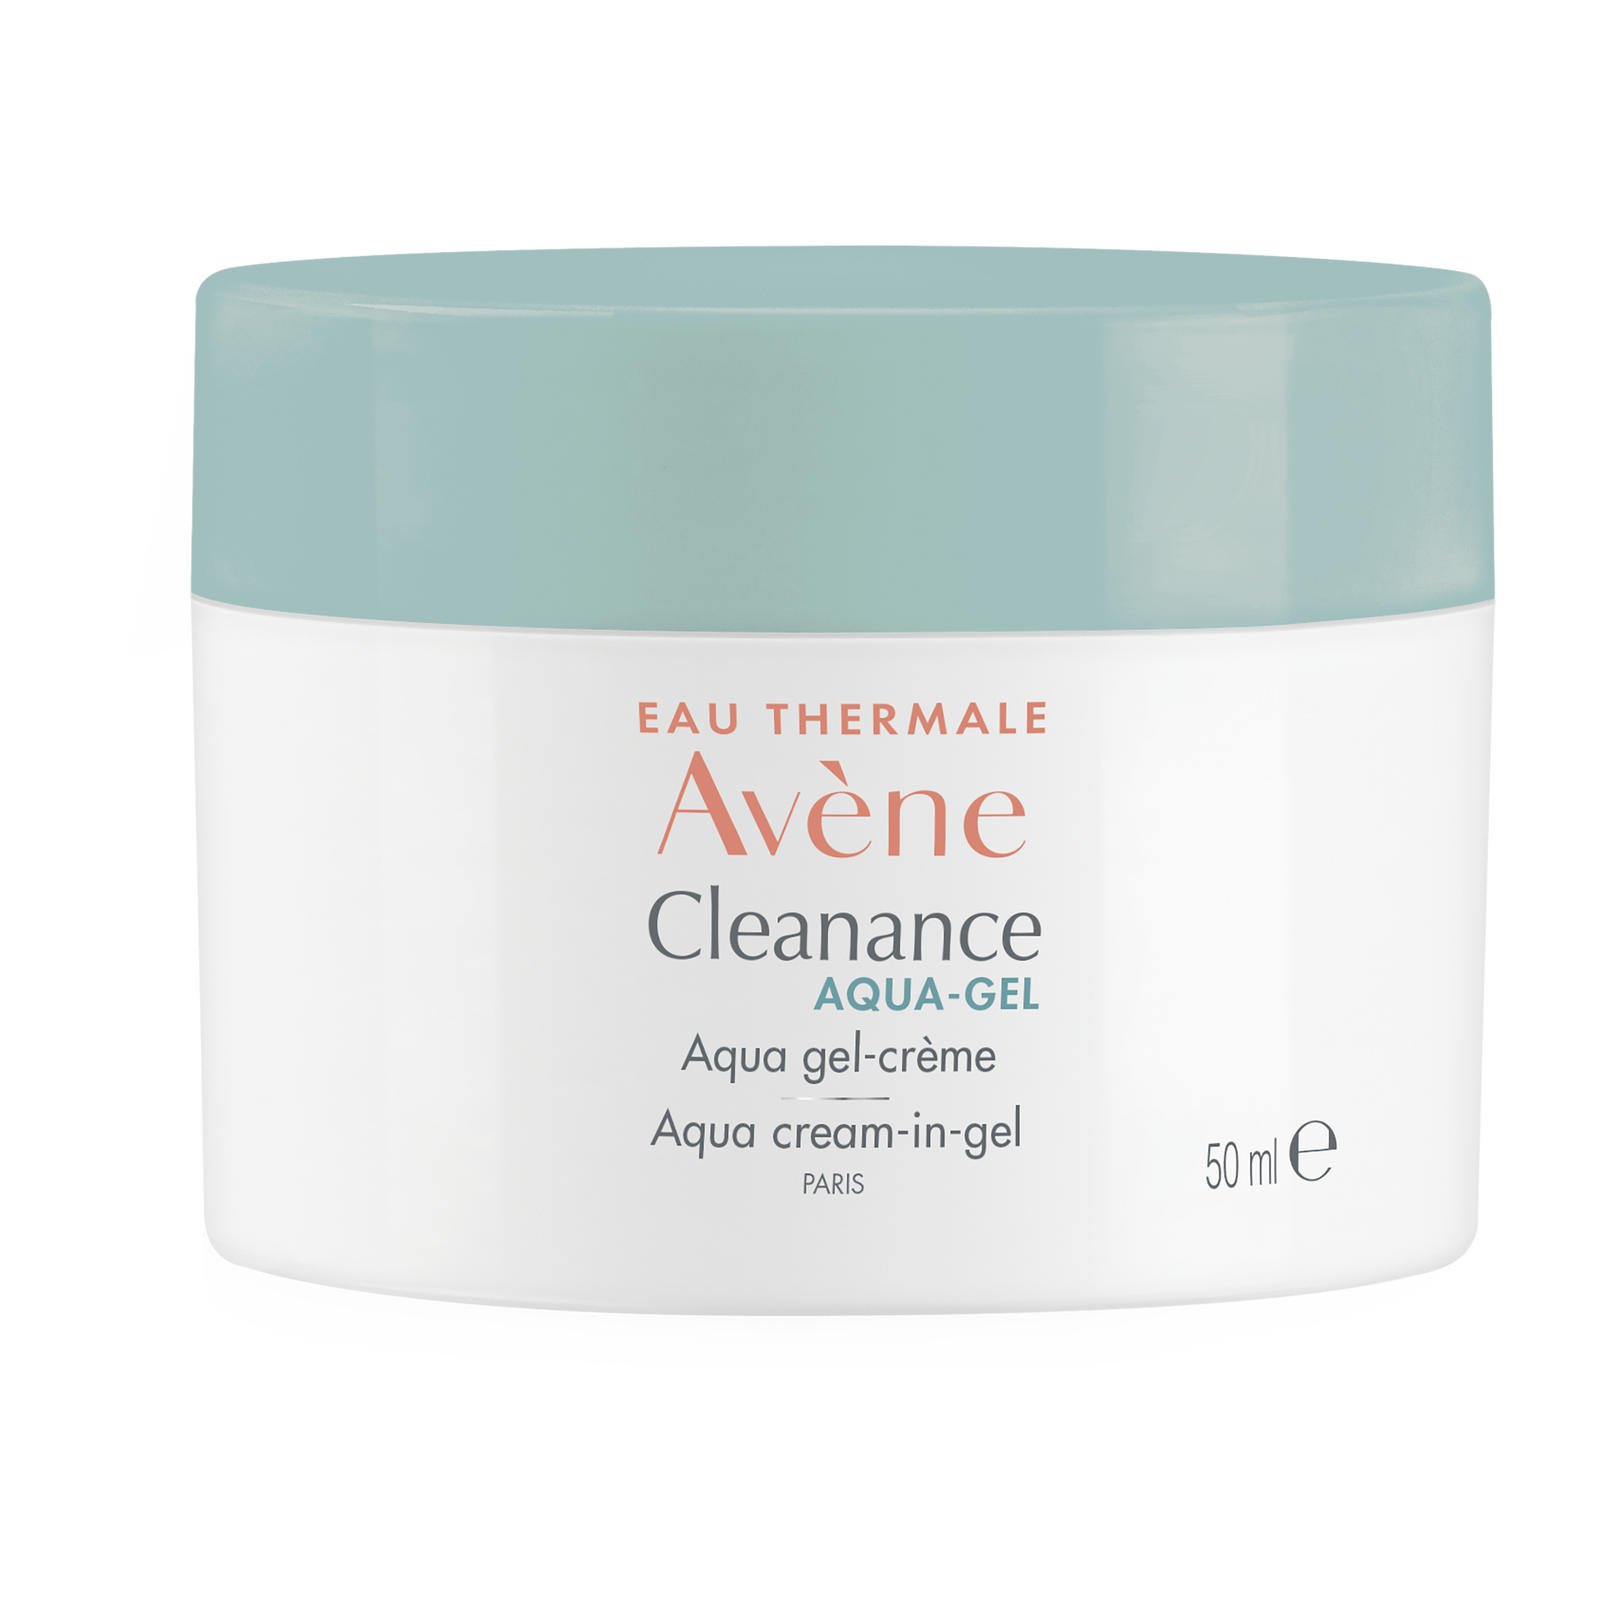 Cleanance Aqua gel-crème matifiant